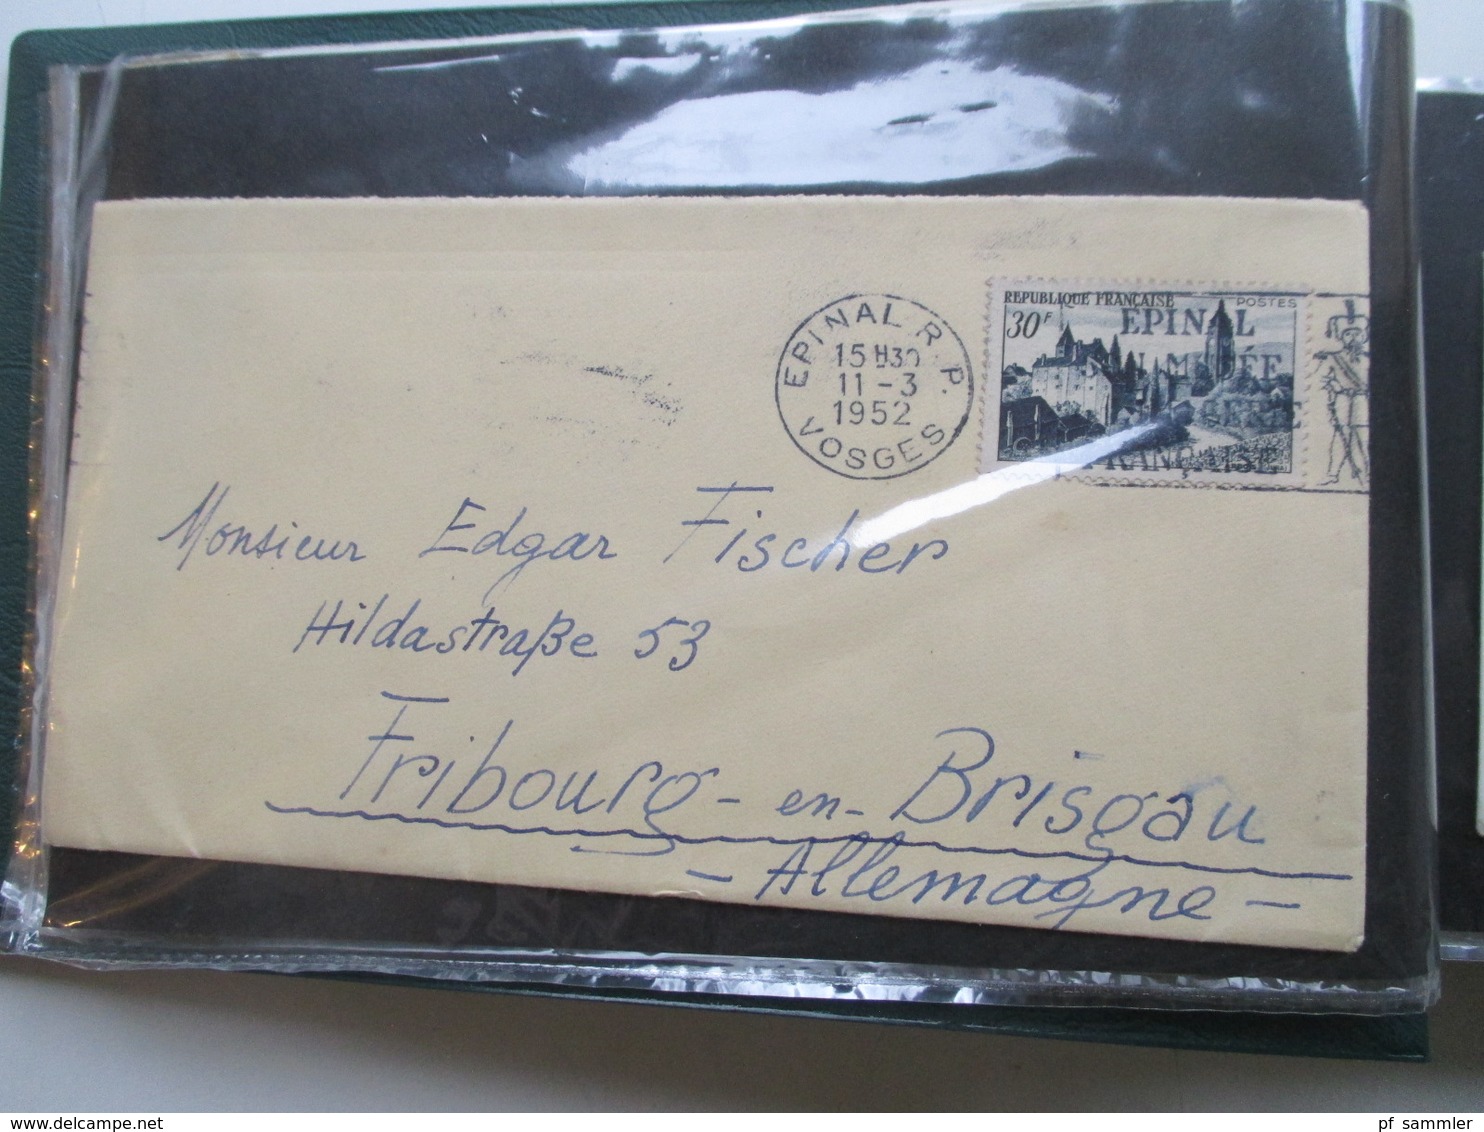 Frankreich Belegealbum 68 Stk. 1948 - 80er einige Einschreiben und auch Luftpost viel Bedarf! viel 1950 / 60er Jahre!